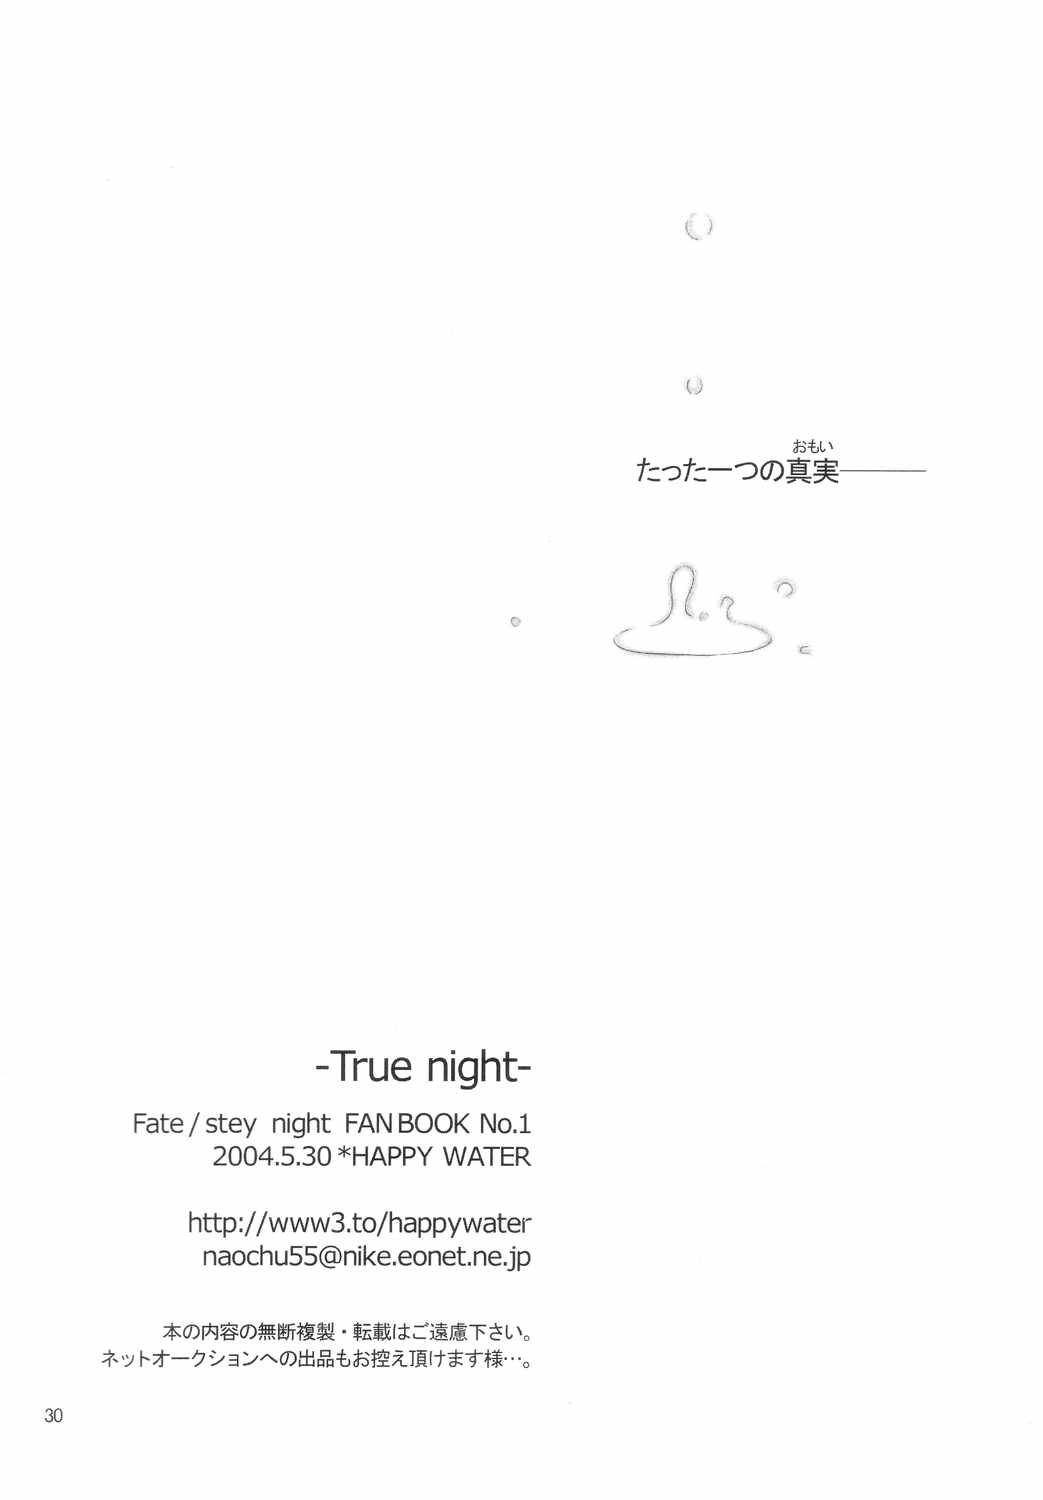 (Mimiket 10) [HAPPY WATER (Kizaki Yuuri)] -True night- (Fate/stay night) (みみけっと10) [HAPPY WATER (樹崎祐里)] -True night- (Fate/stay night)